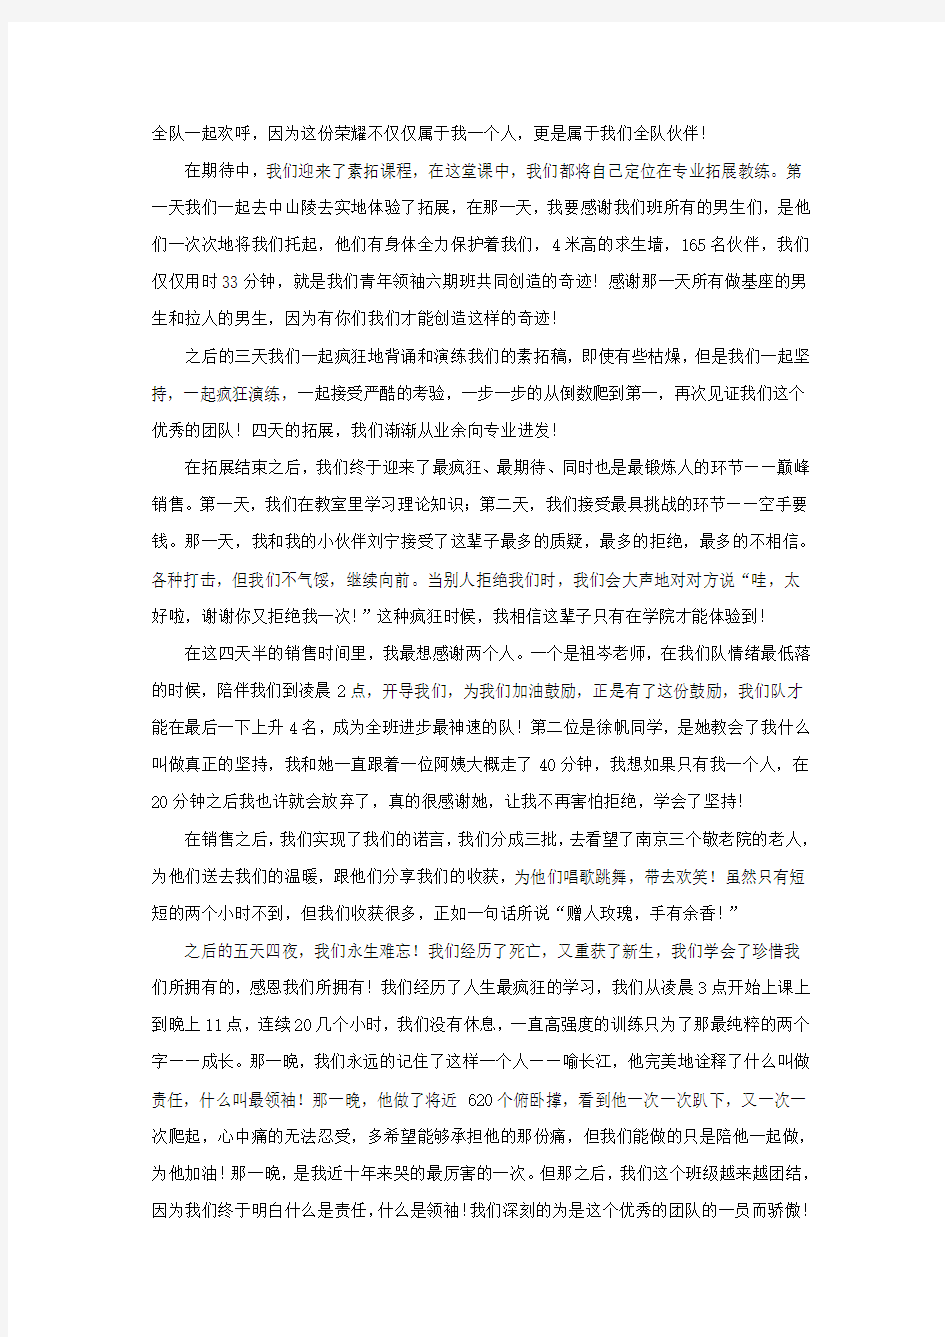 江苏学信学院第6期青年领袖训练营总结——刘苏仪